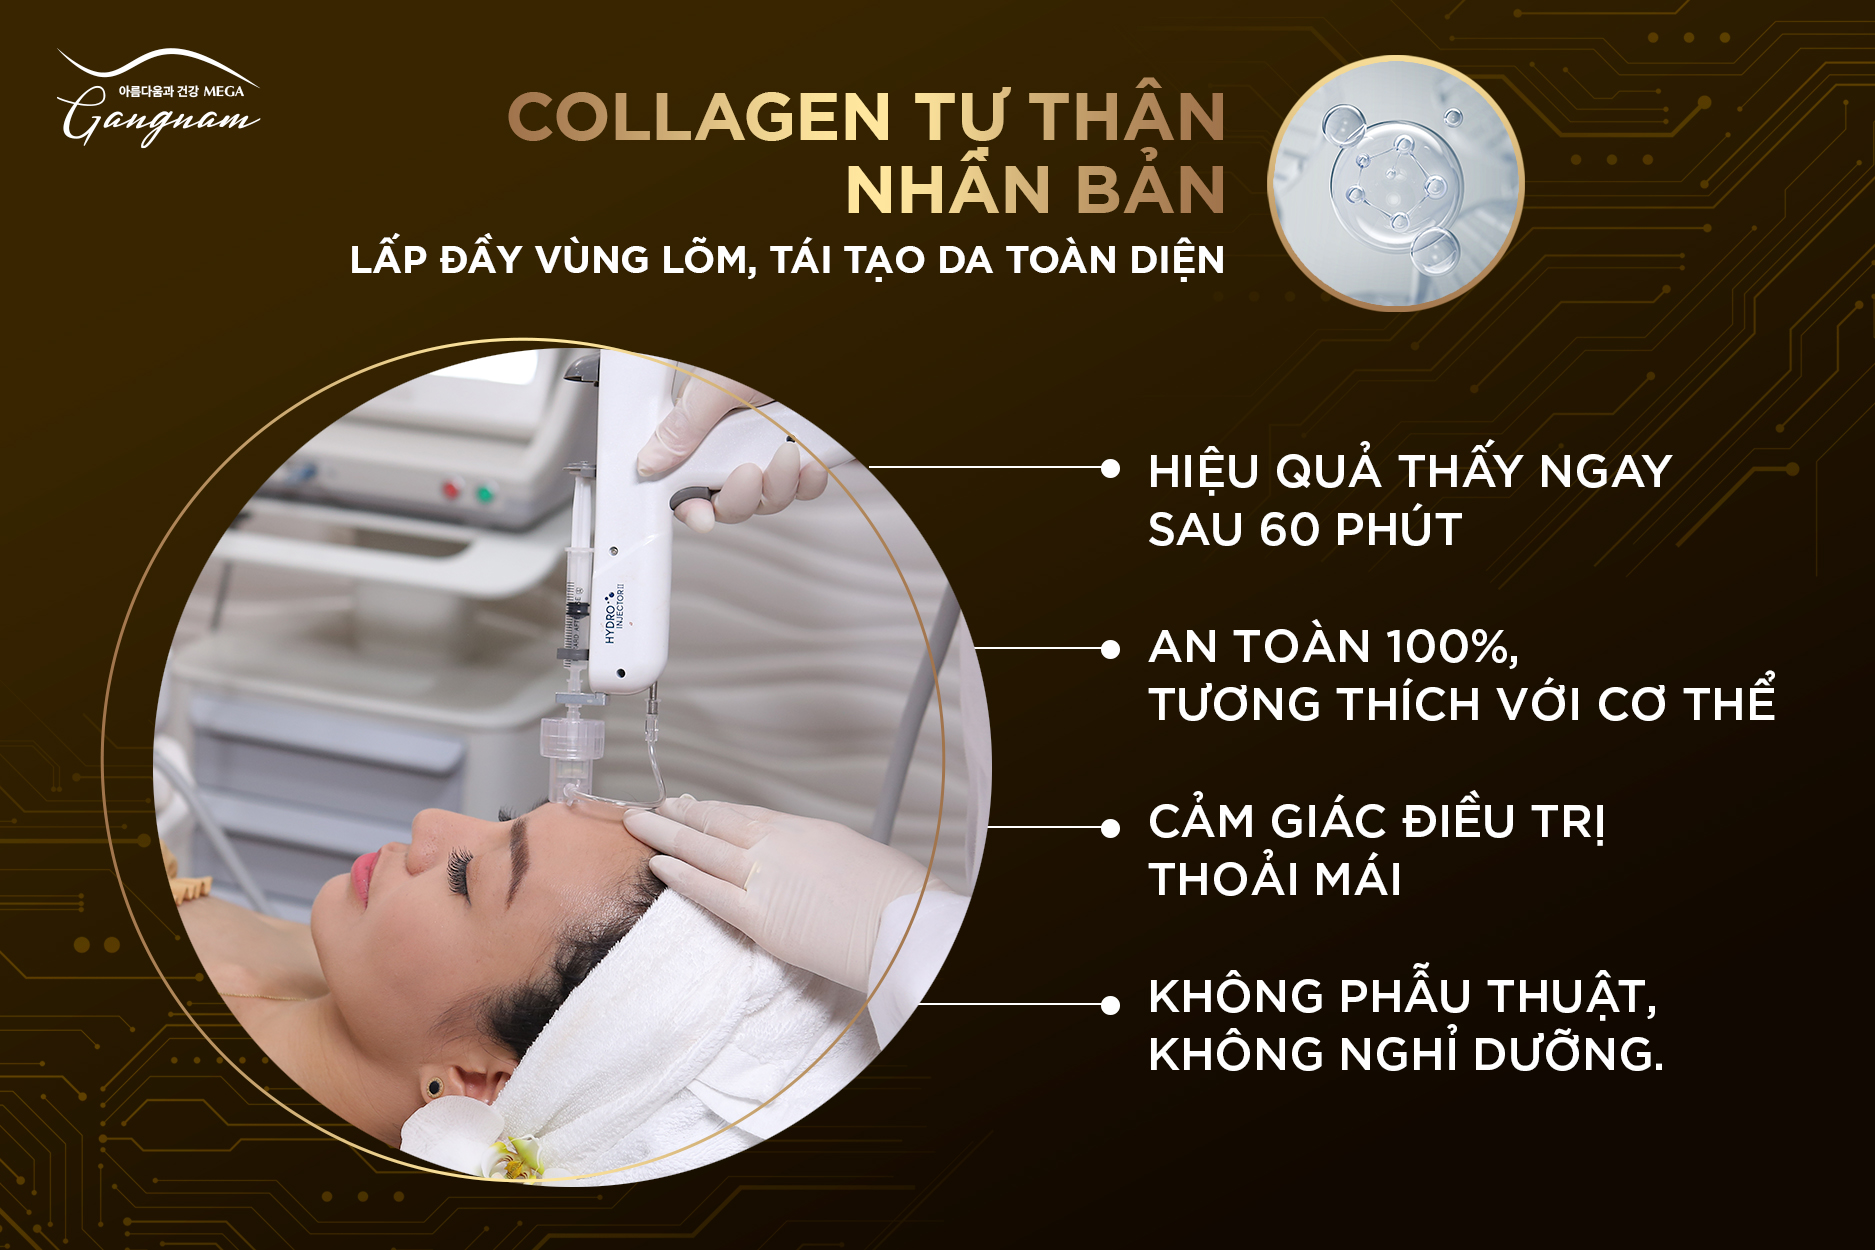 Hiệu quả của trẻ hóa da bằng collagen tự thân nhân bản